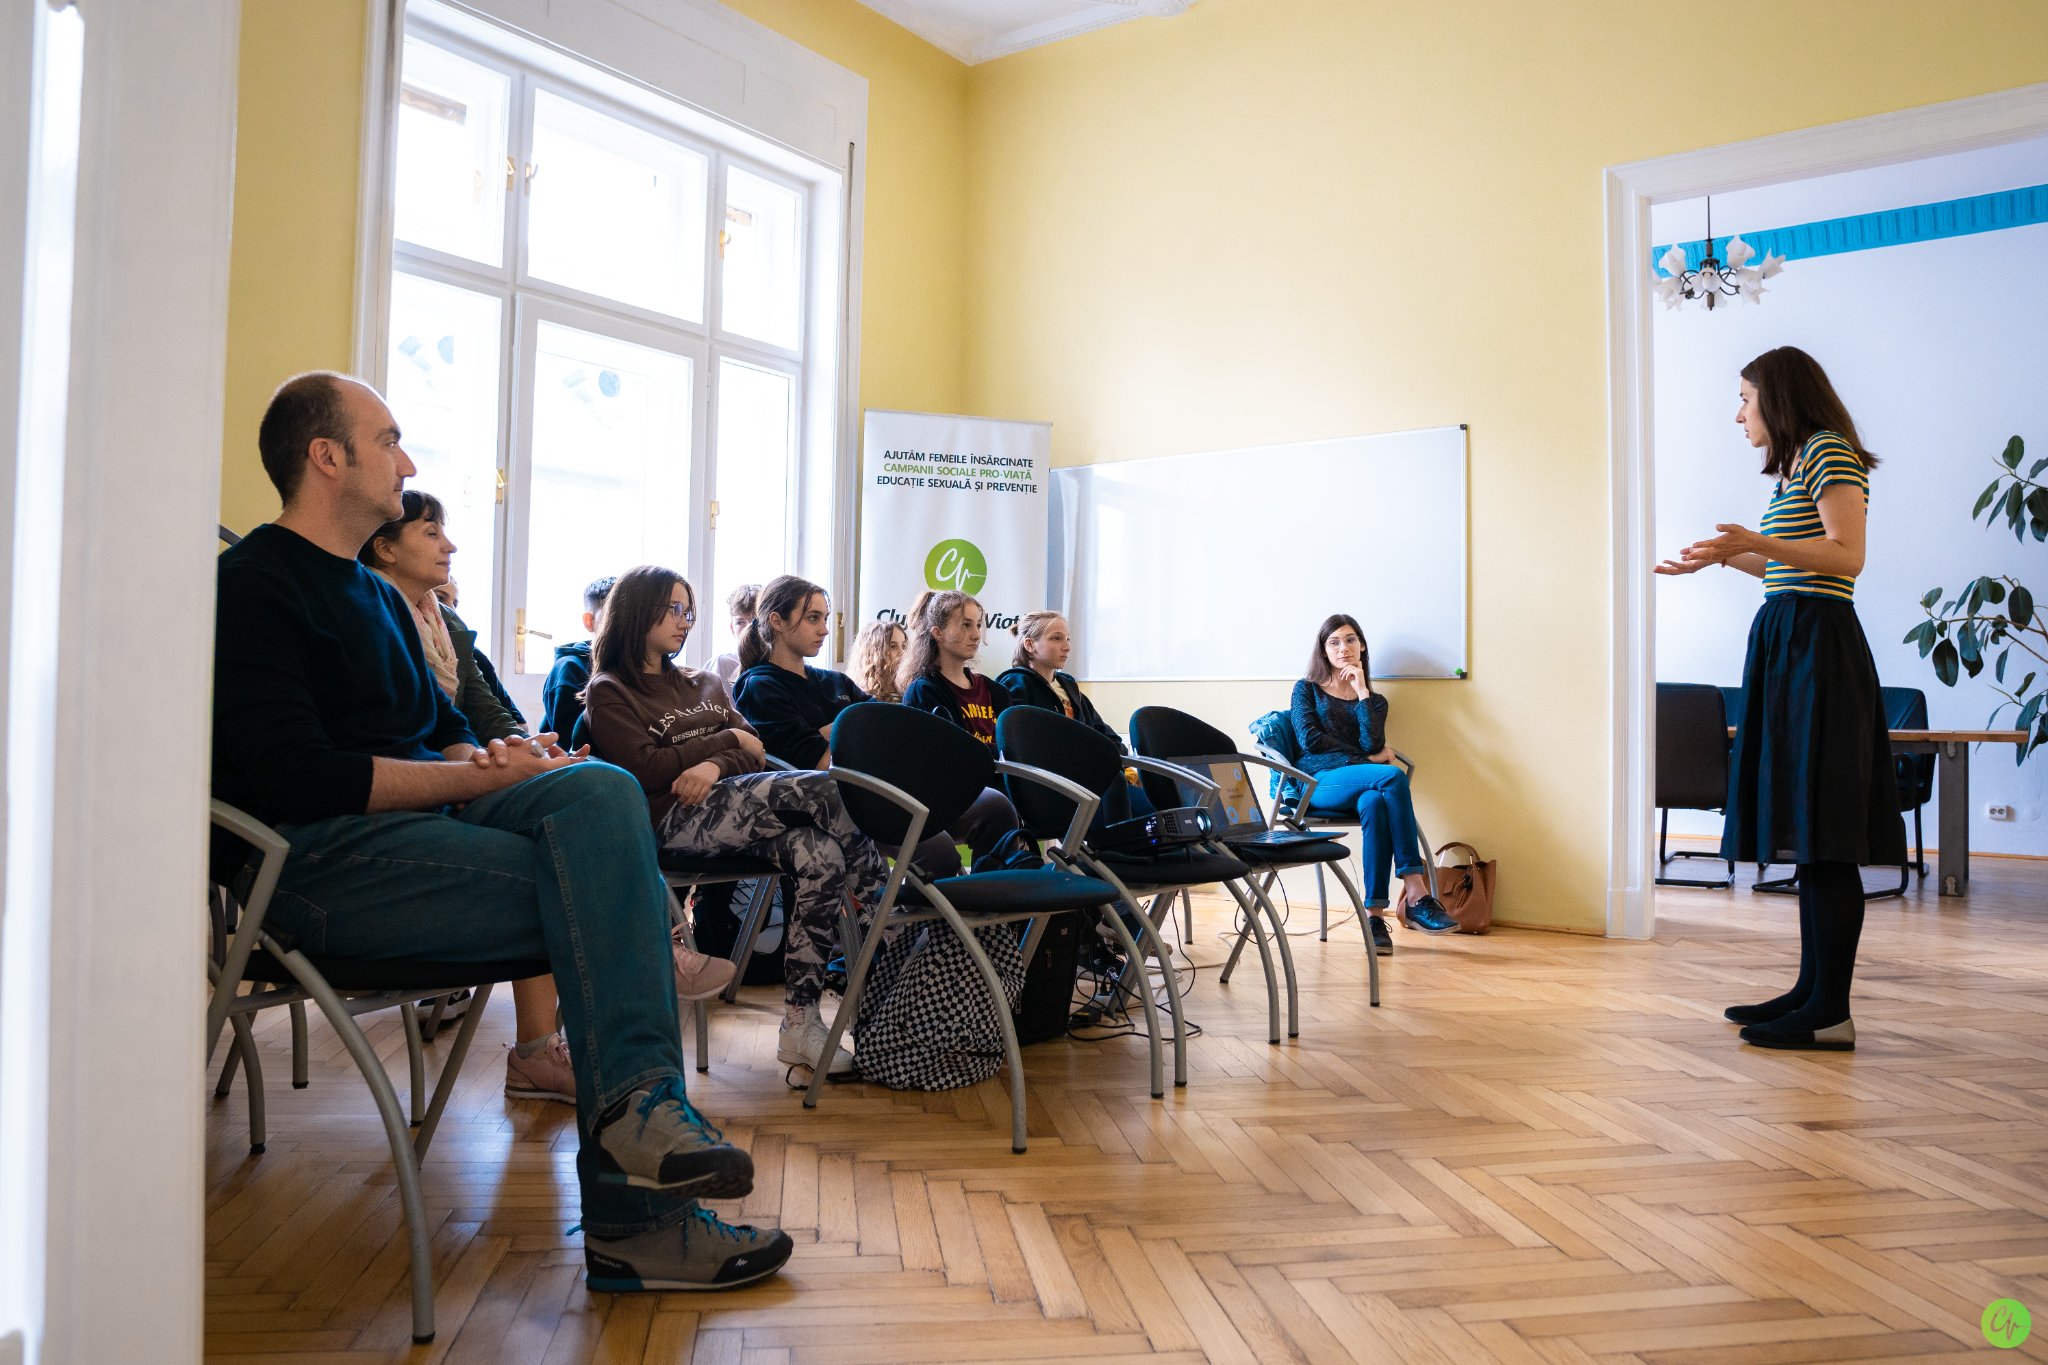 Veste bună pentru mișcarea pro-viață din România: Asociația Clujul Pentru Viață anunță deschiderea unui Centru de consiliere pentru prevenirea crizei de sarcină și a avorturilor. VIDEO și detalii despre cum puteți dona